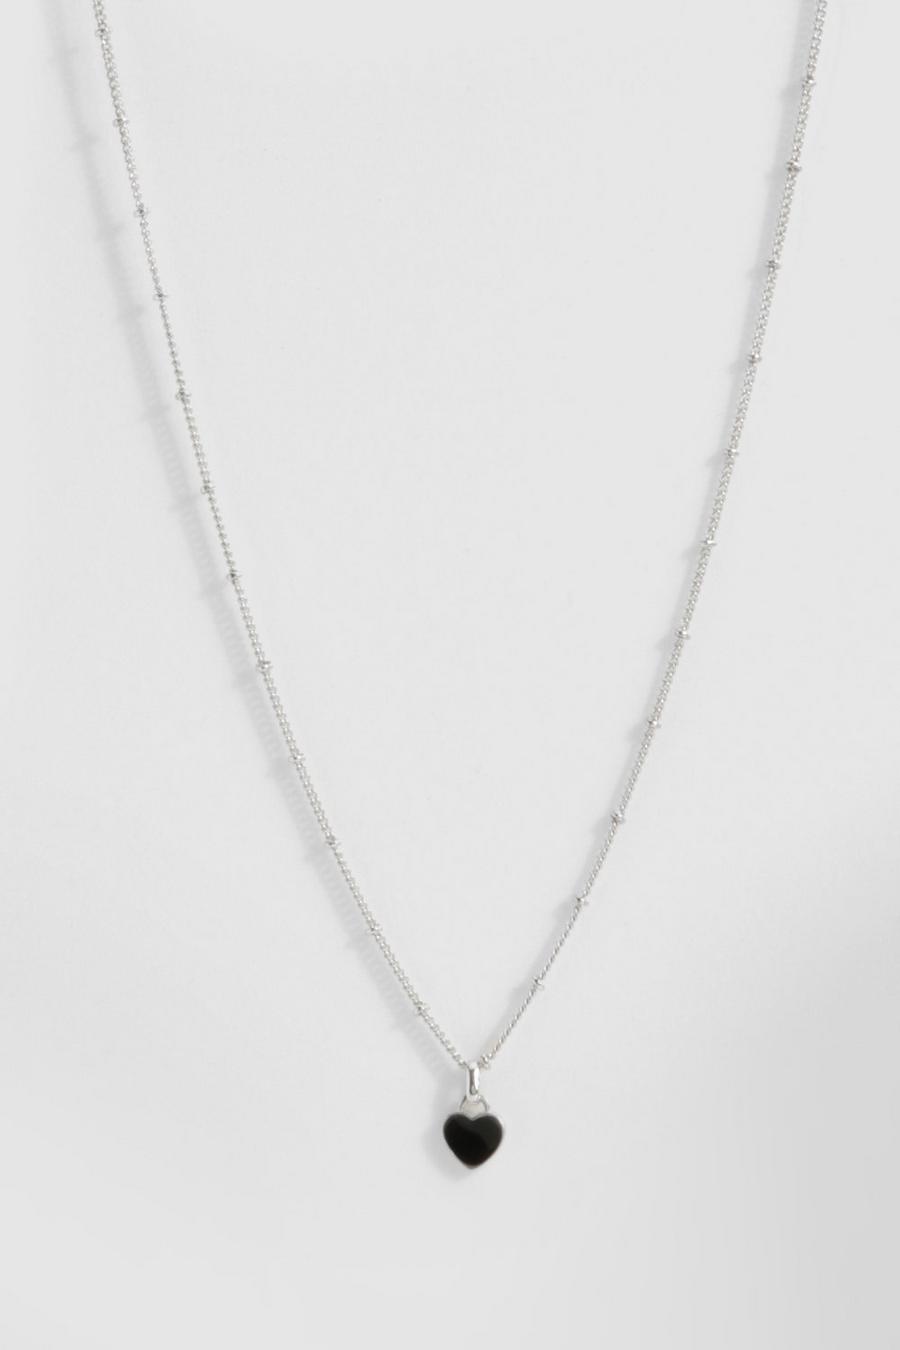 Silver Black Enamel Heart Necklace 